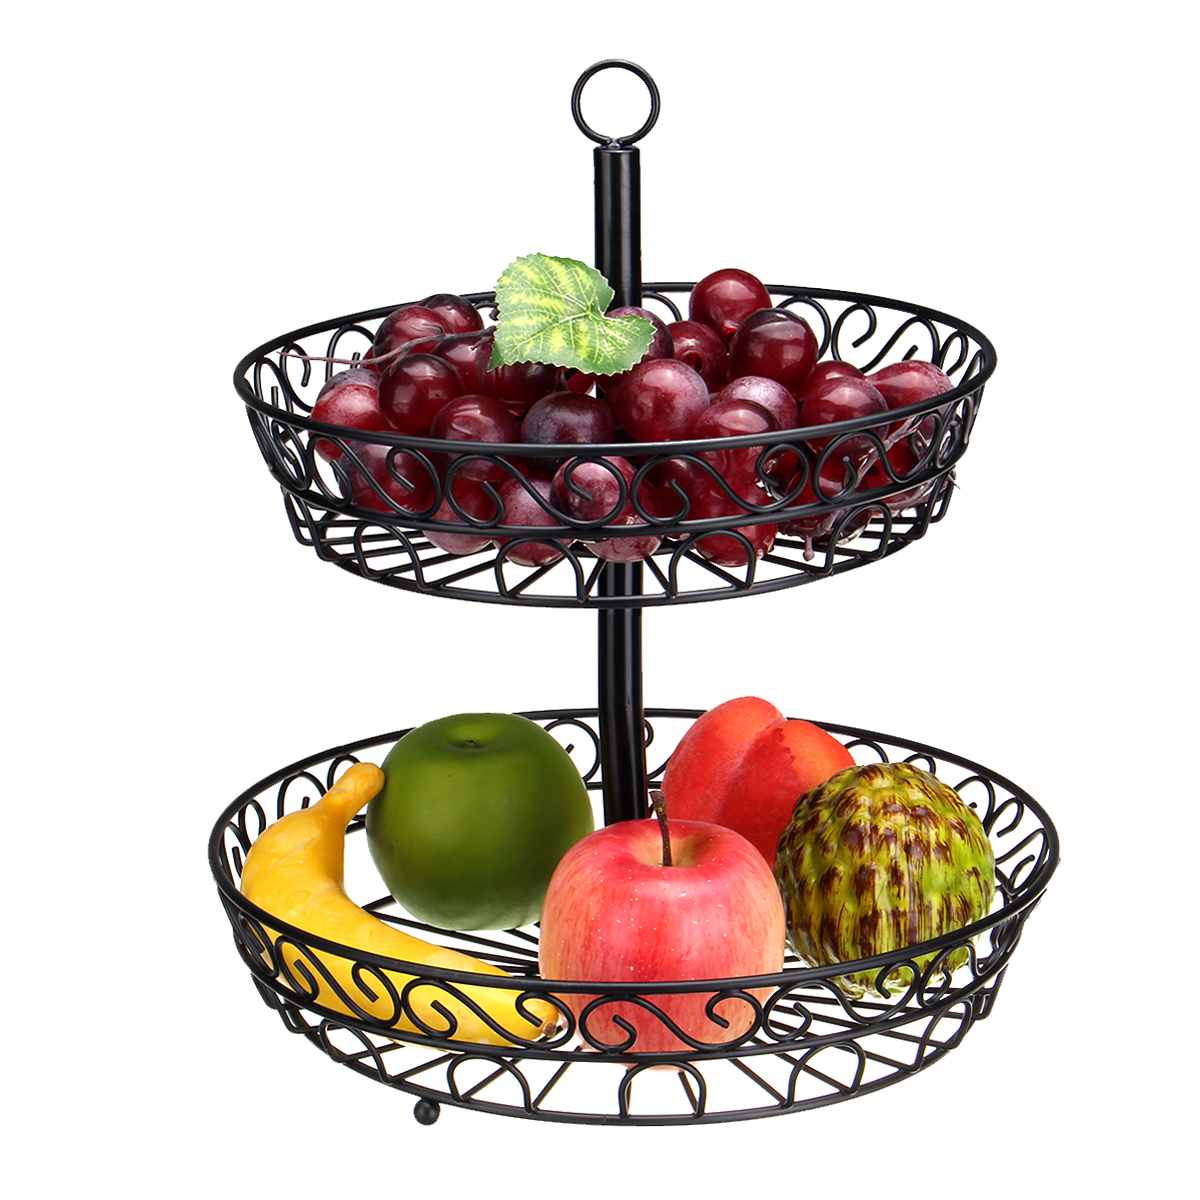 

30cm Kitchen Restaurant Fruit Vegetable Basket 2 Tier Iron Rack Storage Organizer Stand Holder